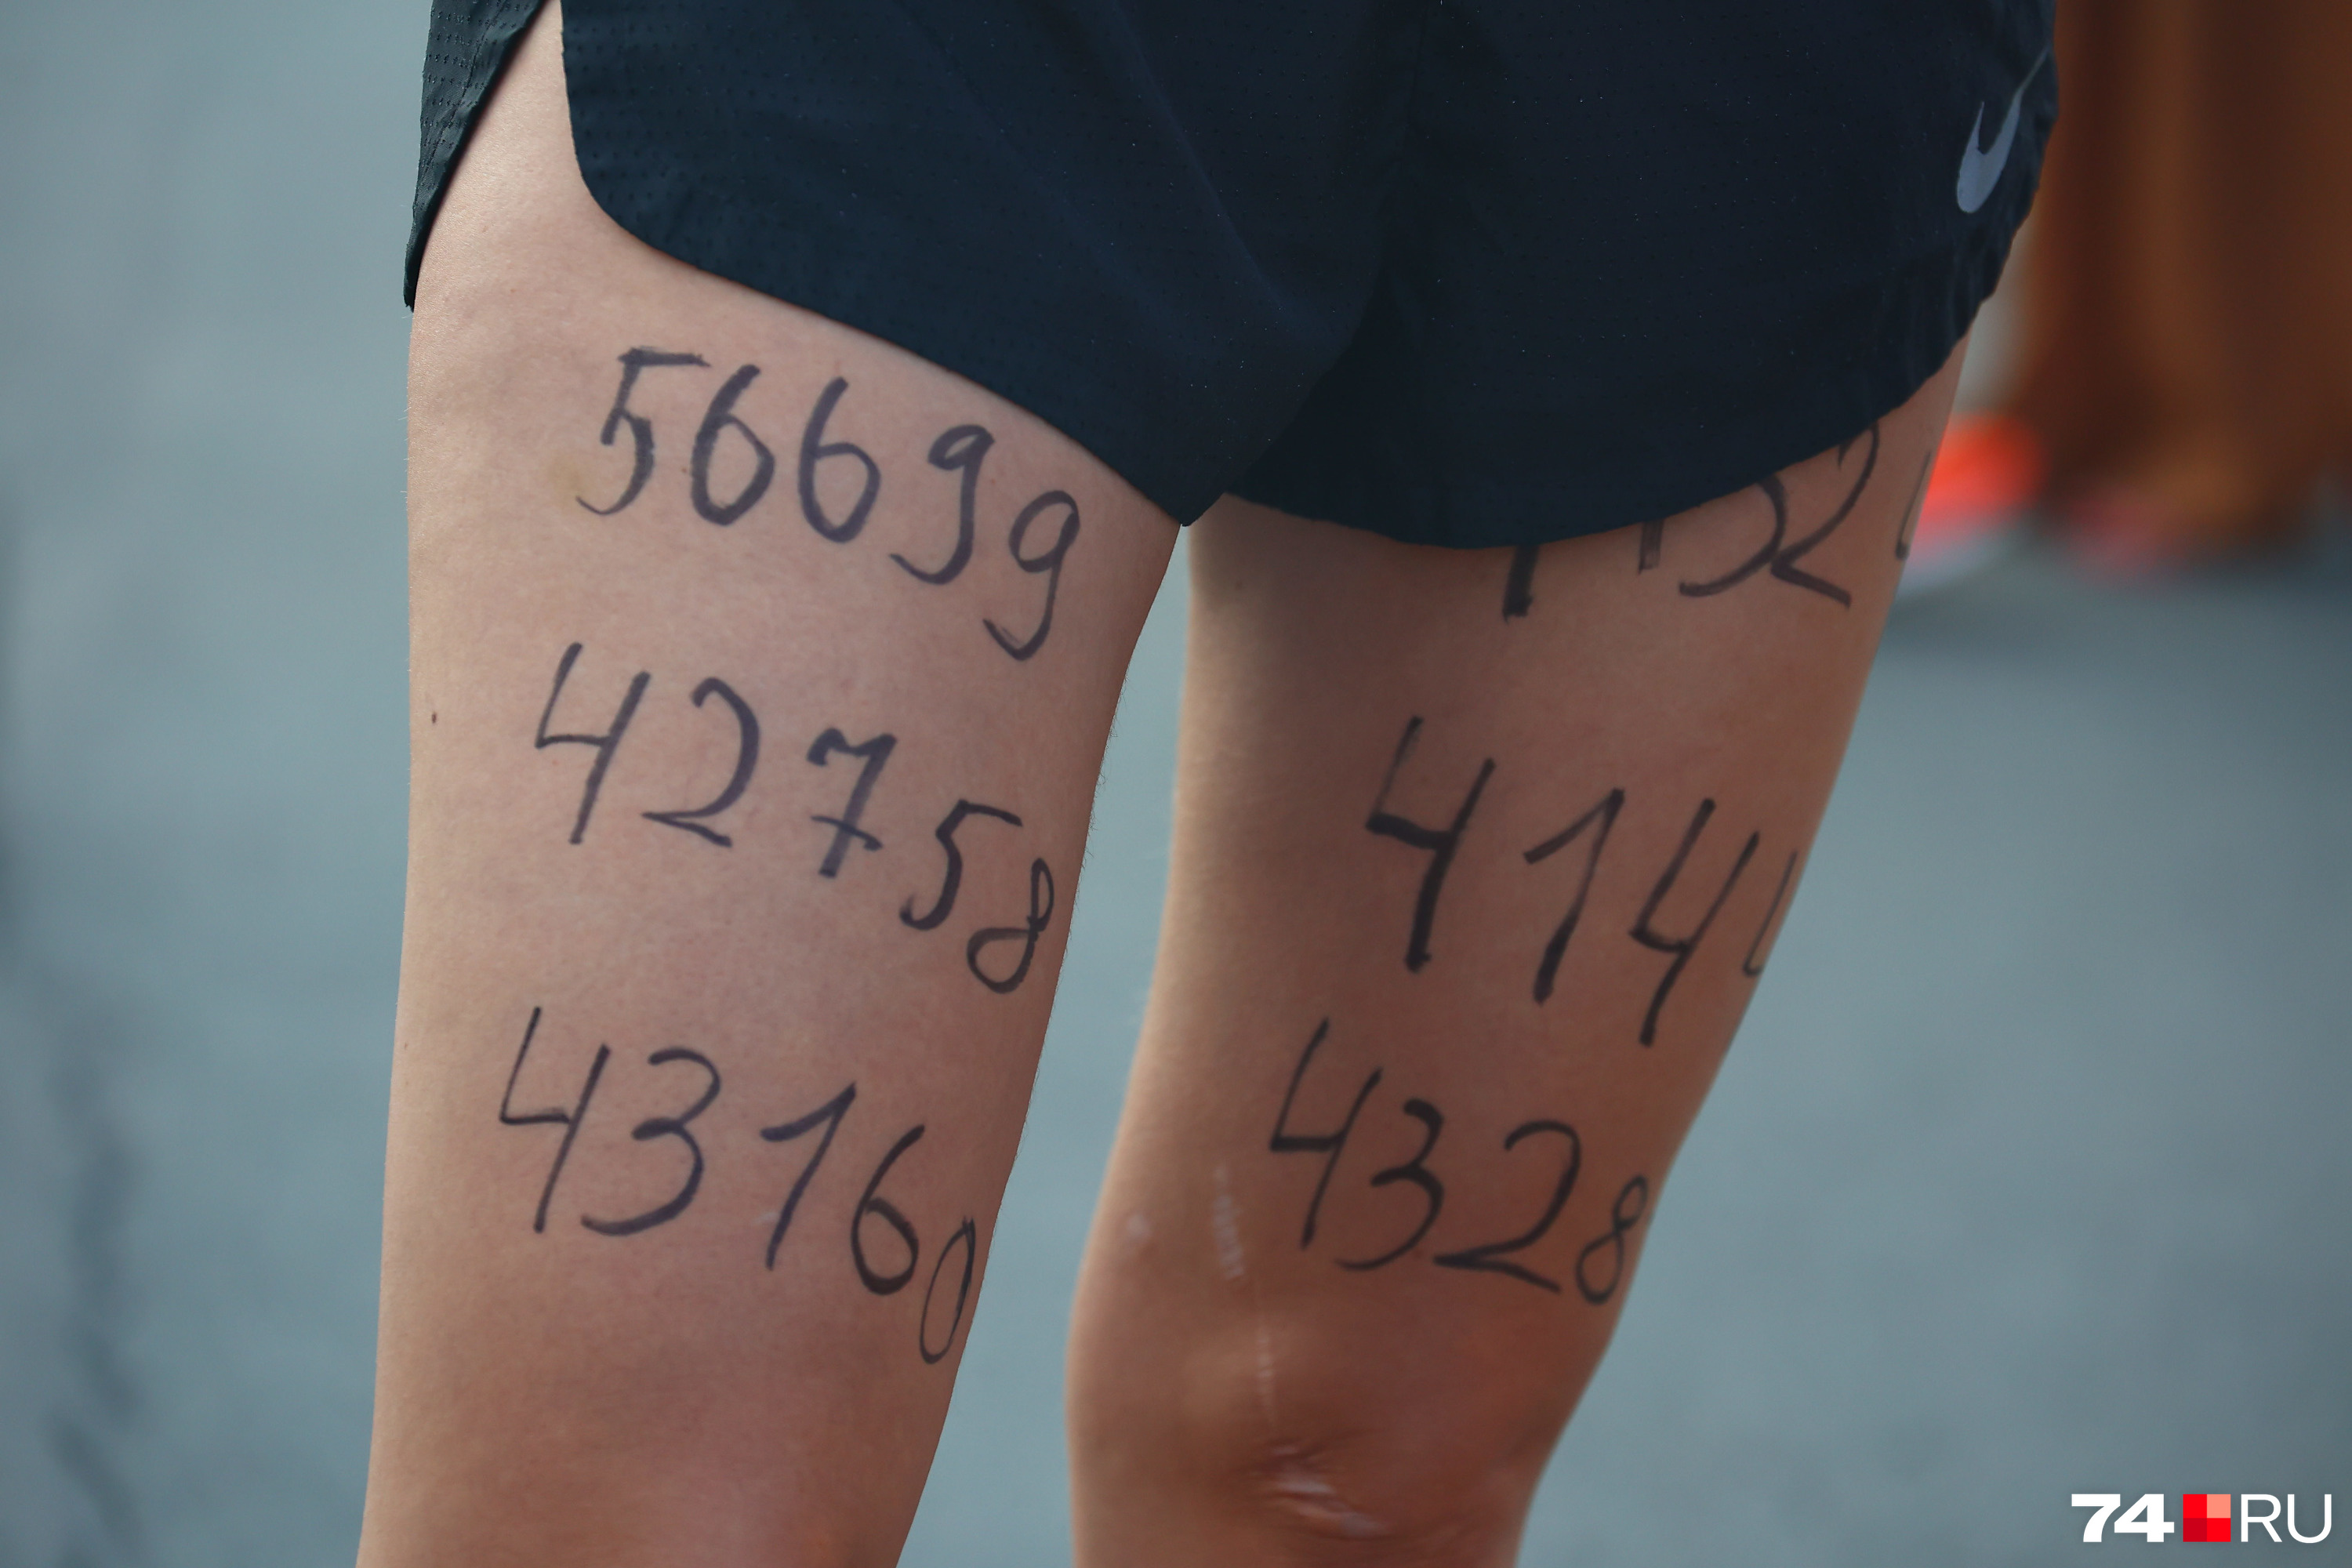 Одна из участниц нанесла на ноги номера своих друзей. Они сегодня тоже бегут марафон (90 км!), но в другом месте